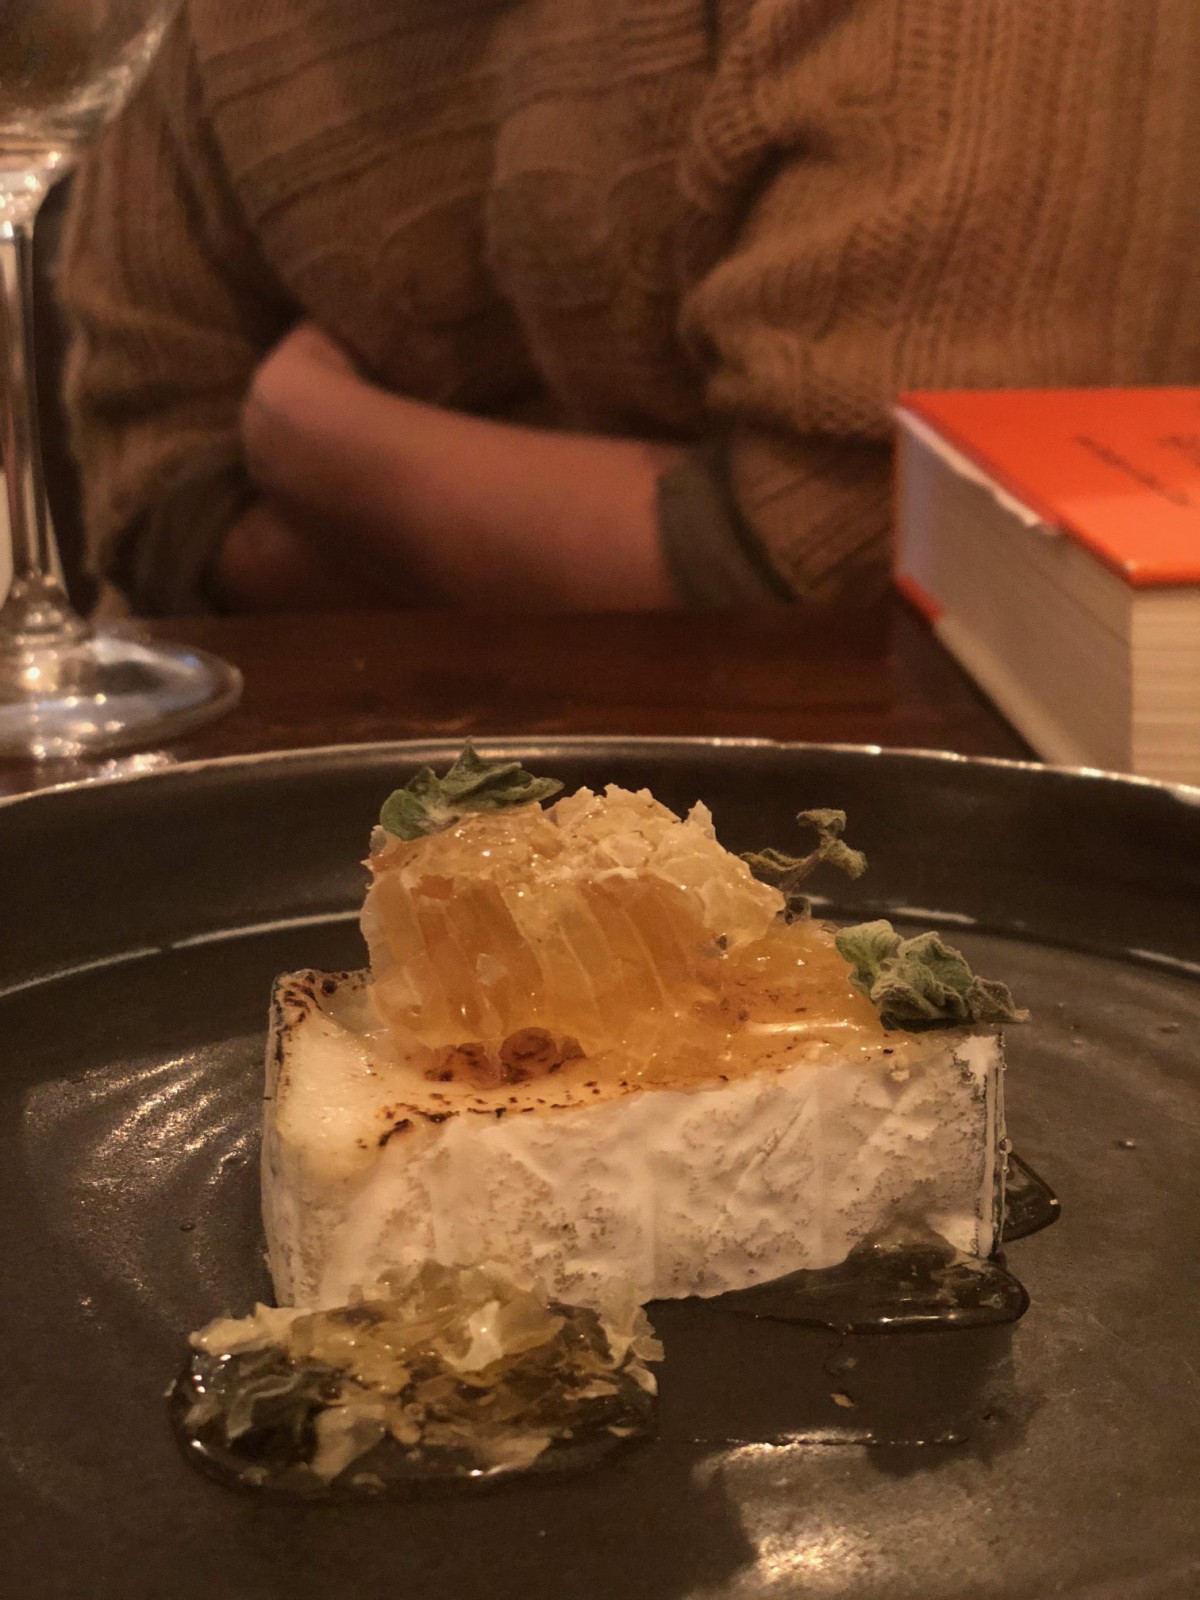 גבינת ולנסיי חמה של משק ברקנית עם יערת דבש ספונטנית, רוטנברג